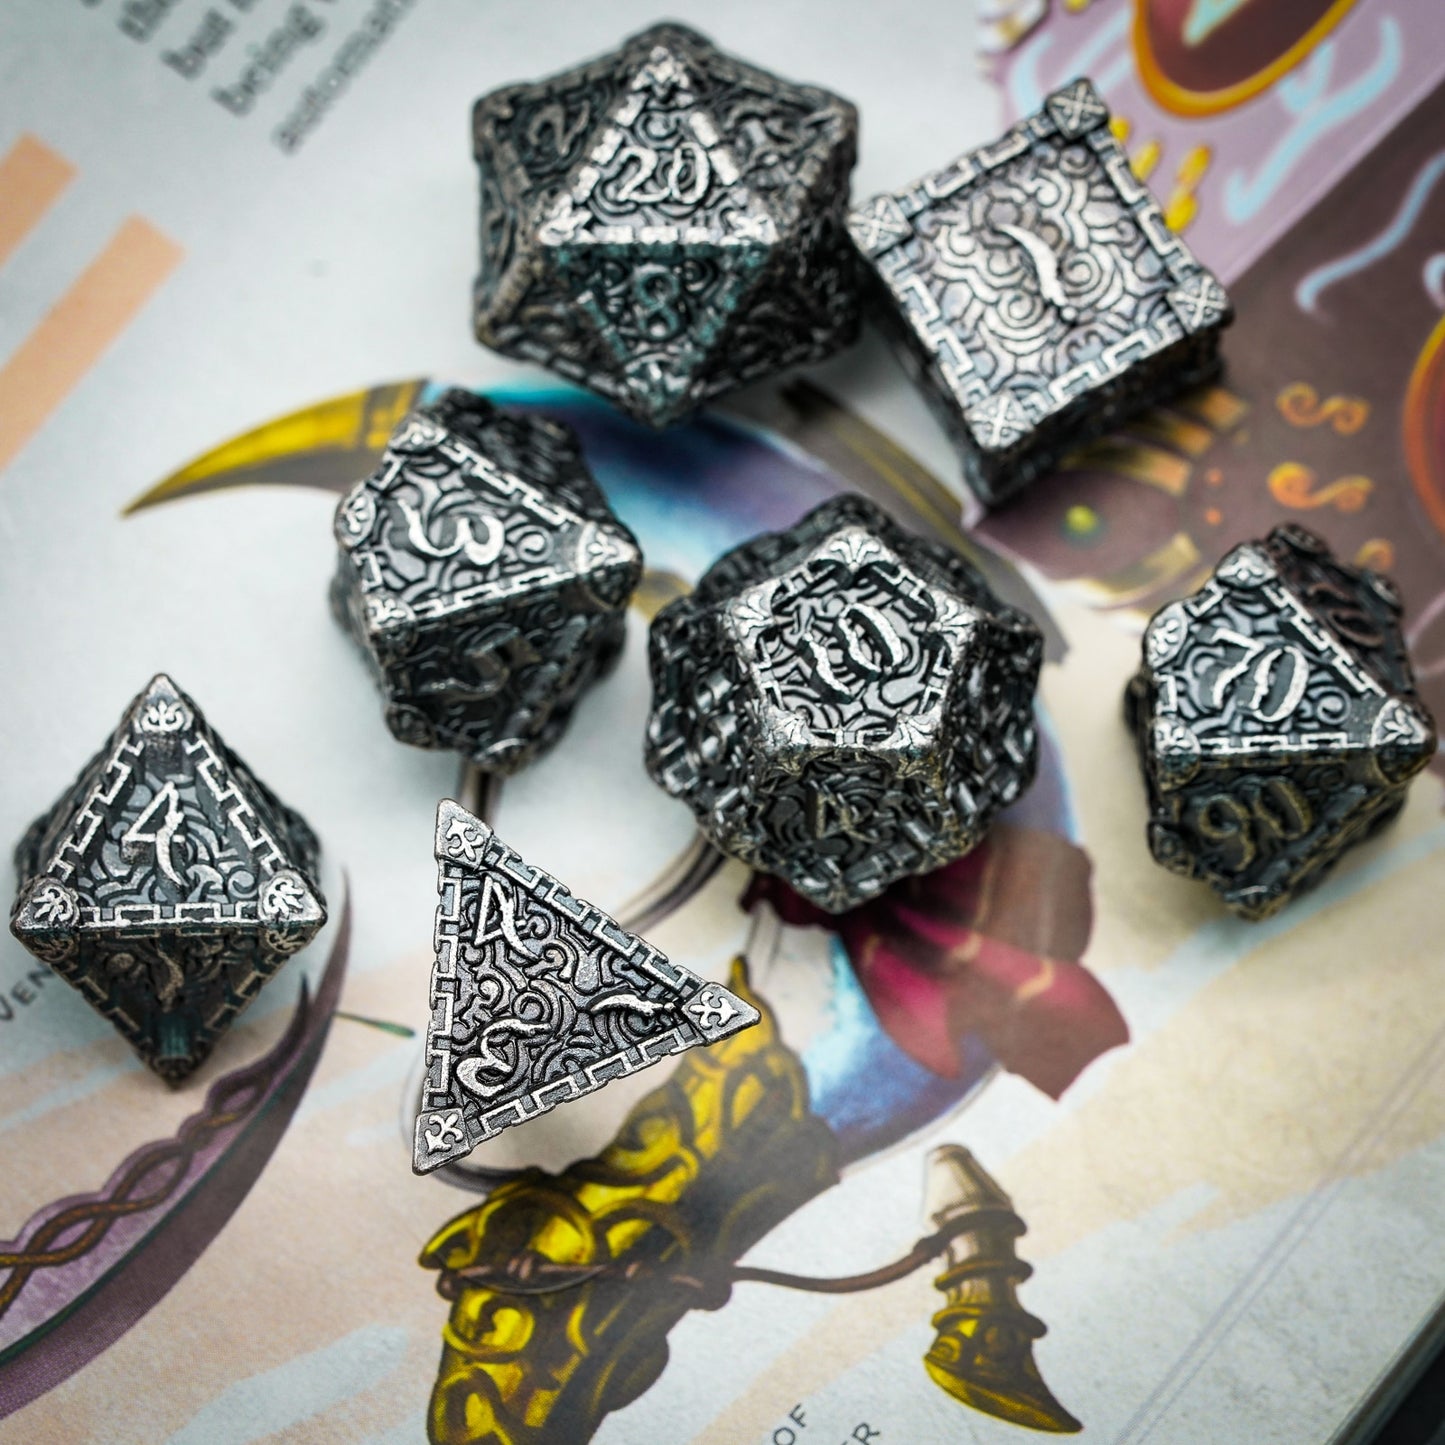 Silver metal dice set displayed on rulebook